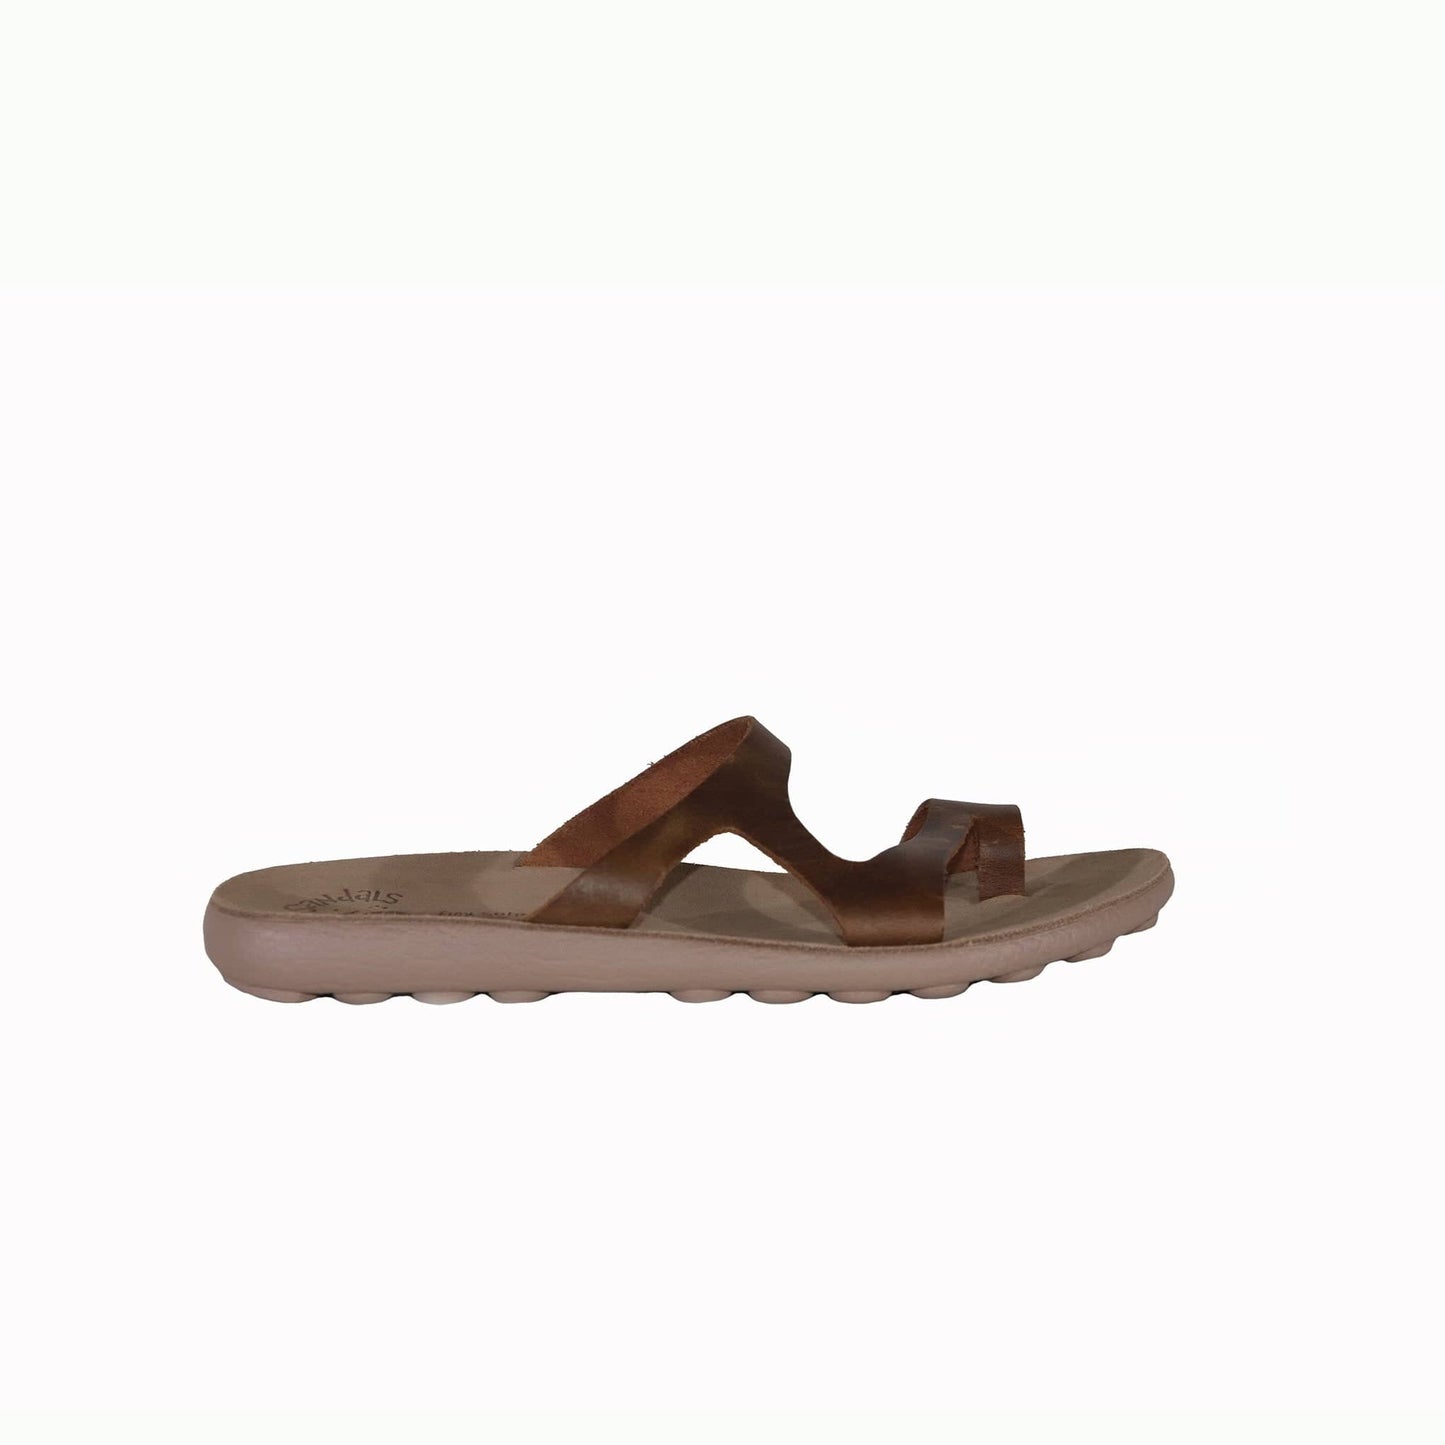 Fantasy sandals s410 zaira brown FLAT SANDALS FANTASY SANDALS